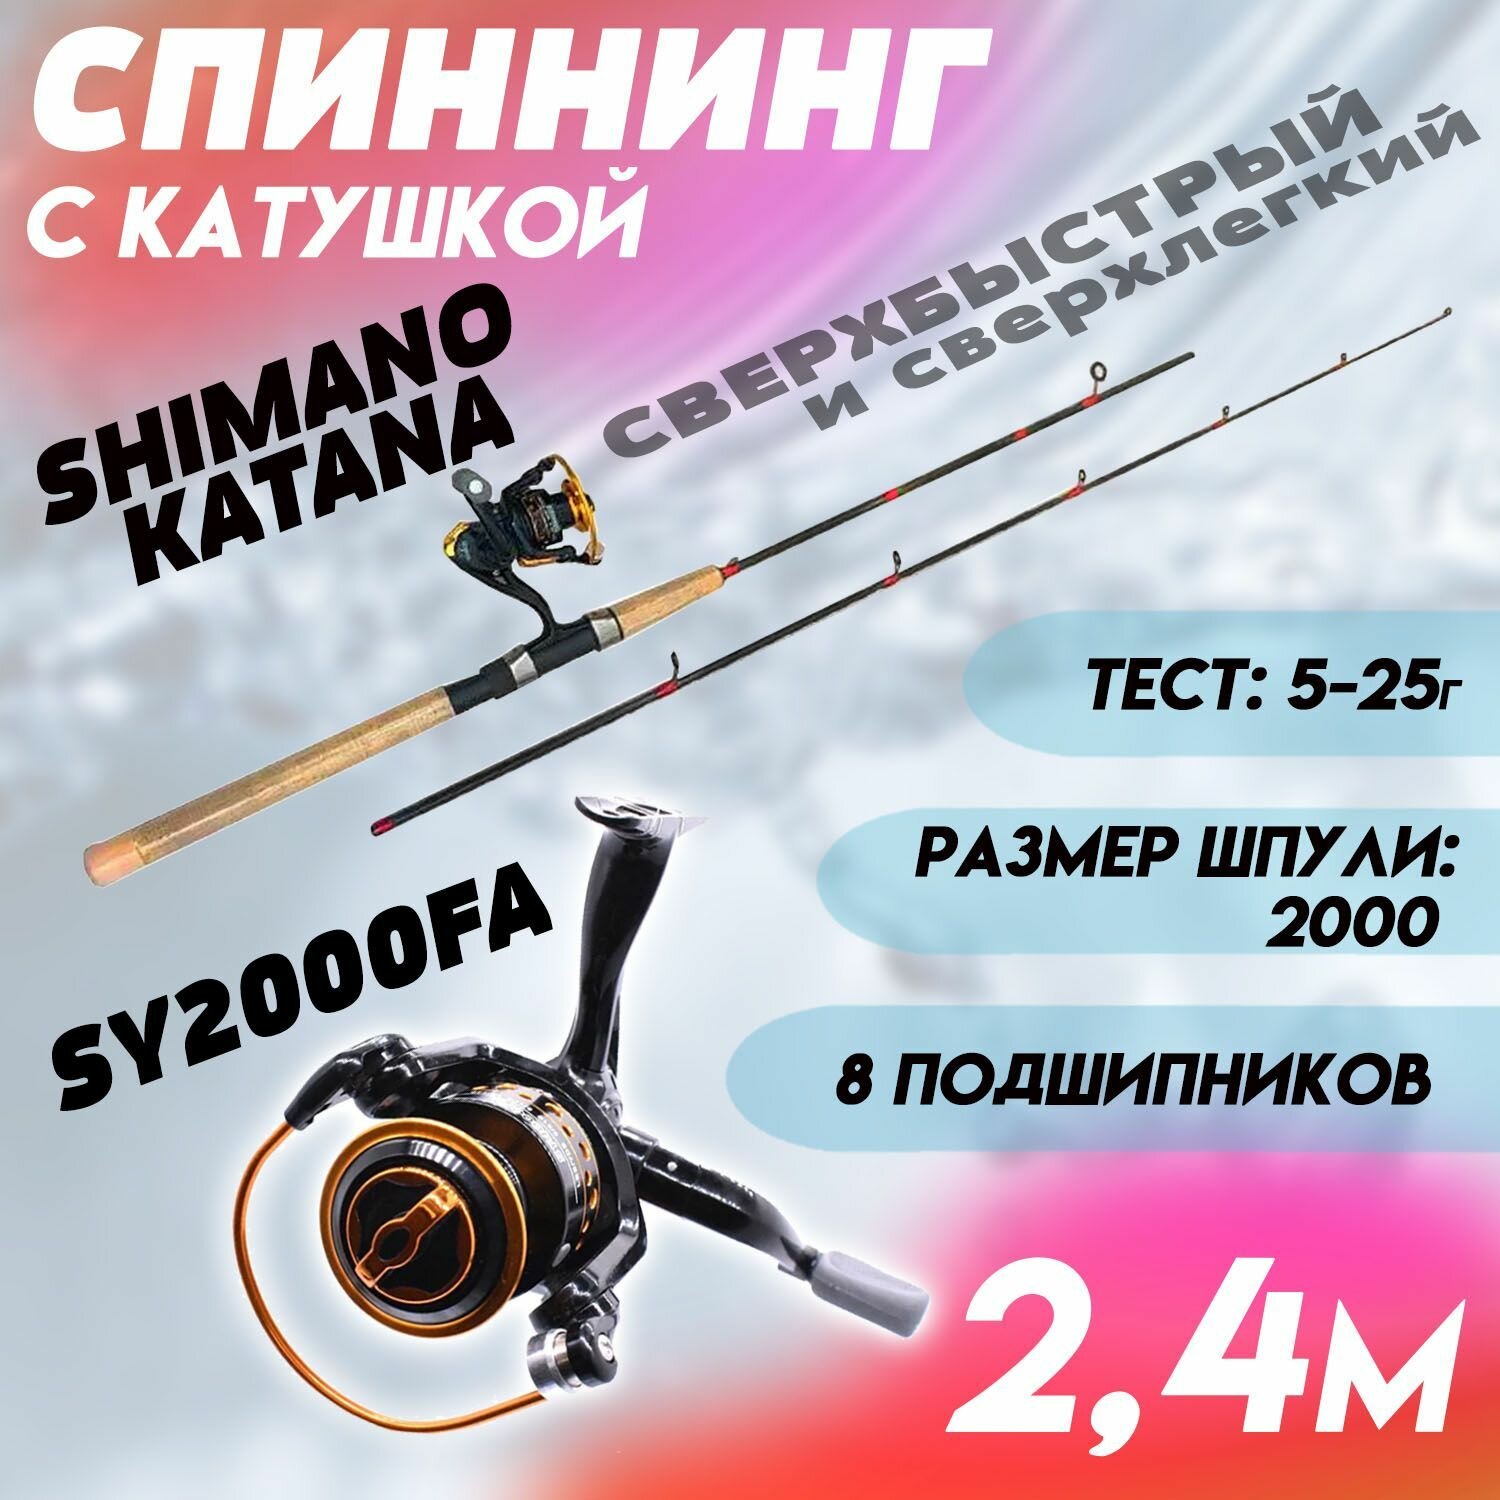 Спиннинг для рыбалки Shimano Catana 2.4м с Катушкой SY 2000FA+ плетеный шнур в Подарок /Готовая сборная удочка для спиннинговой рыбалки